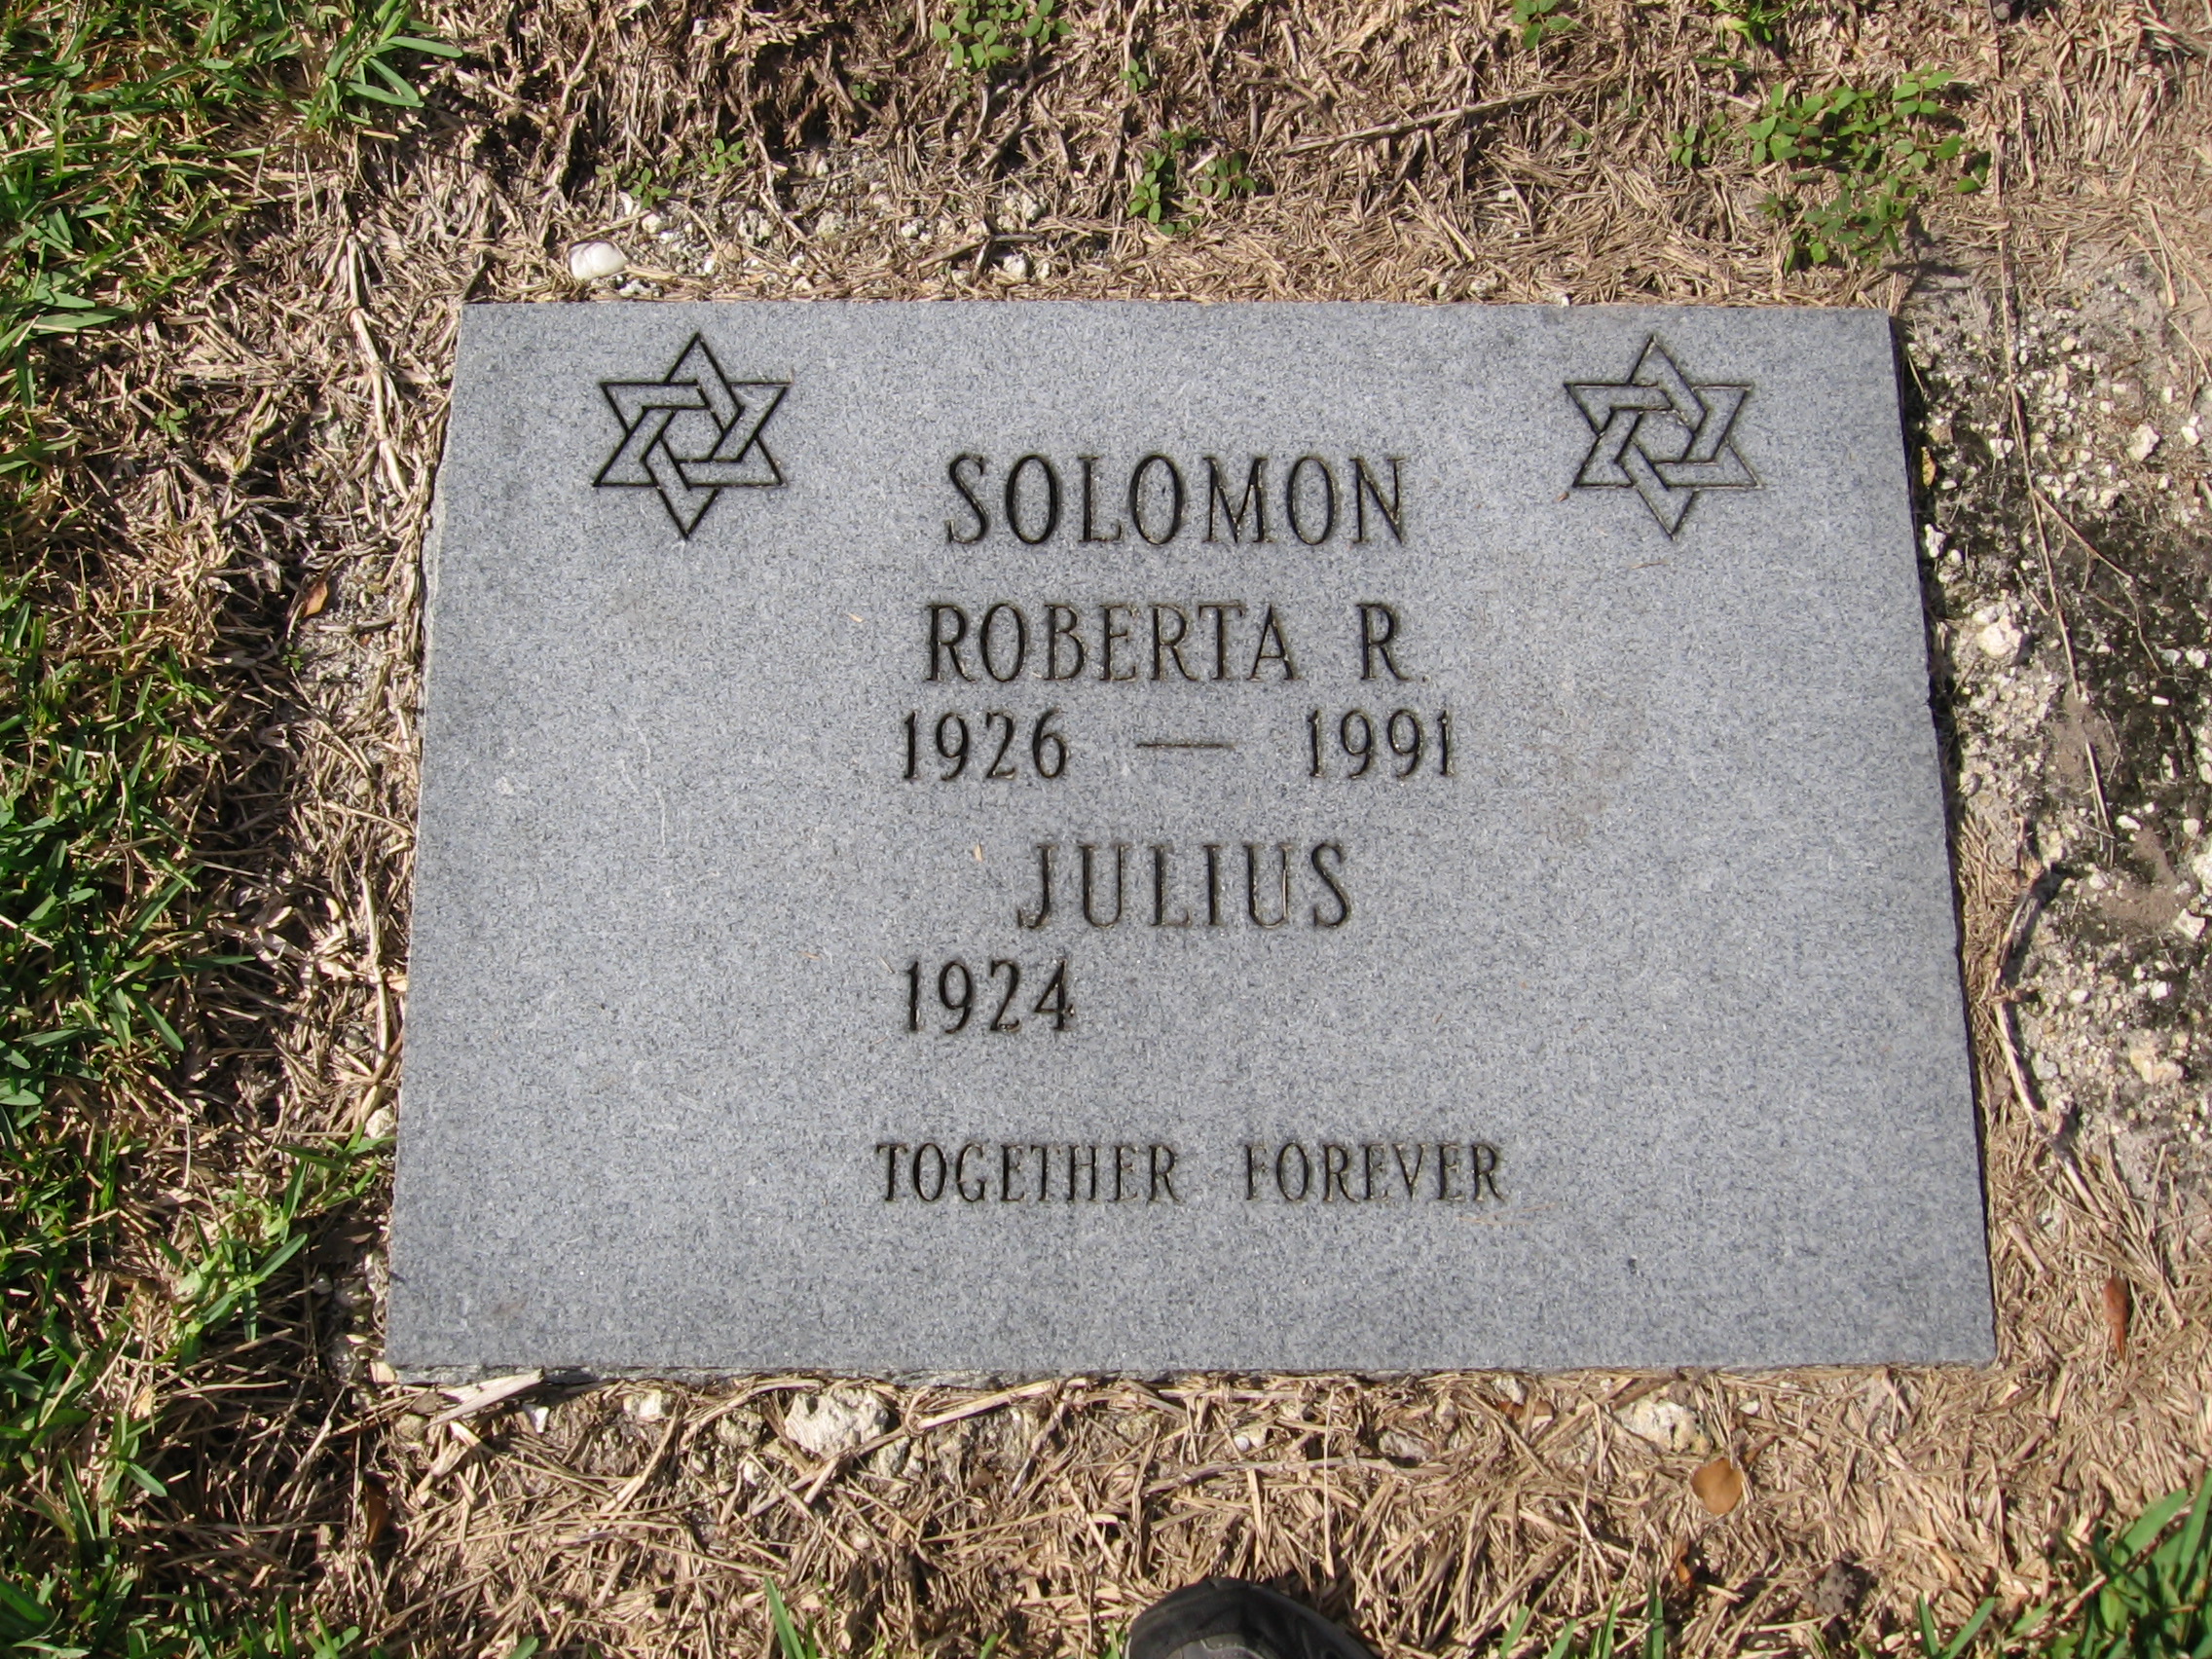 Roberta R Solomon